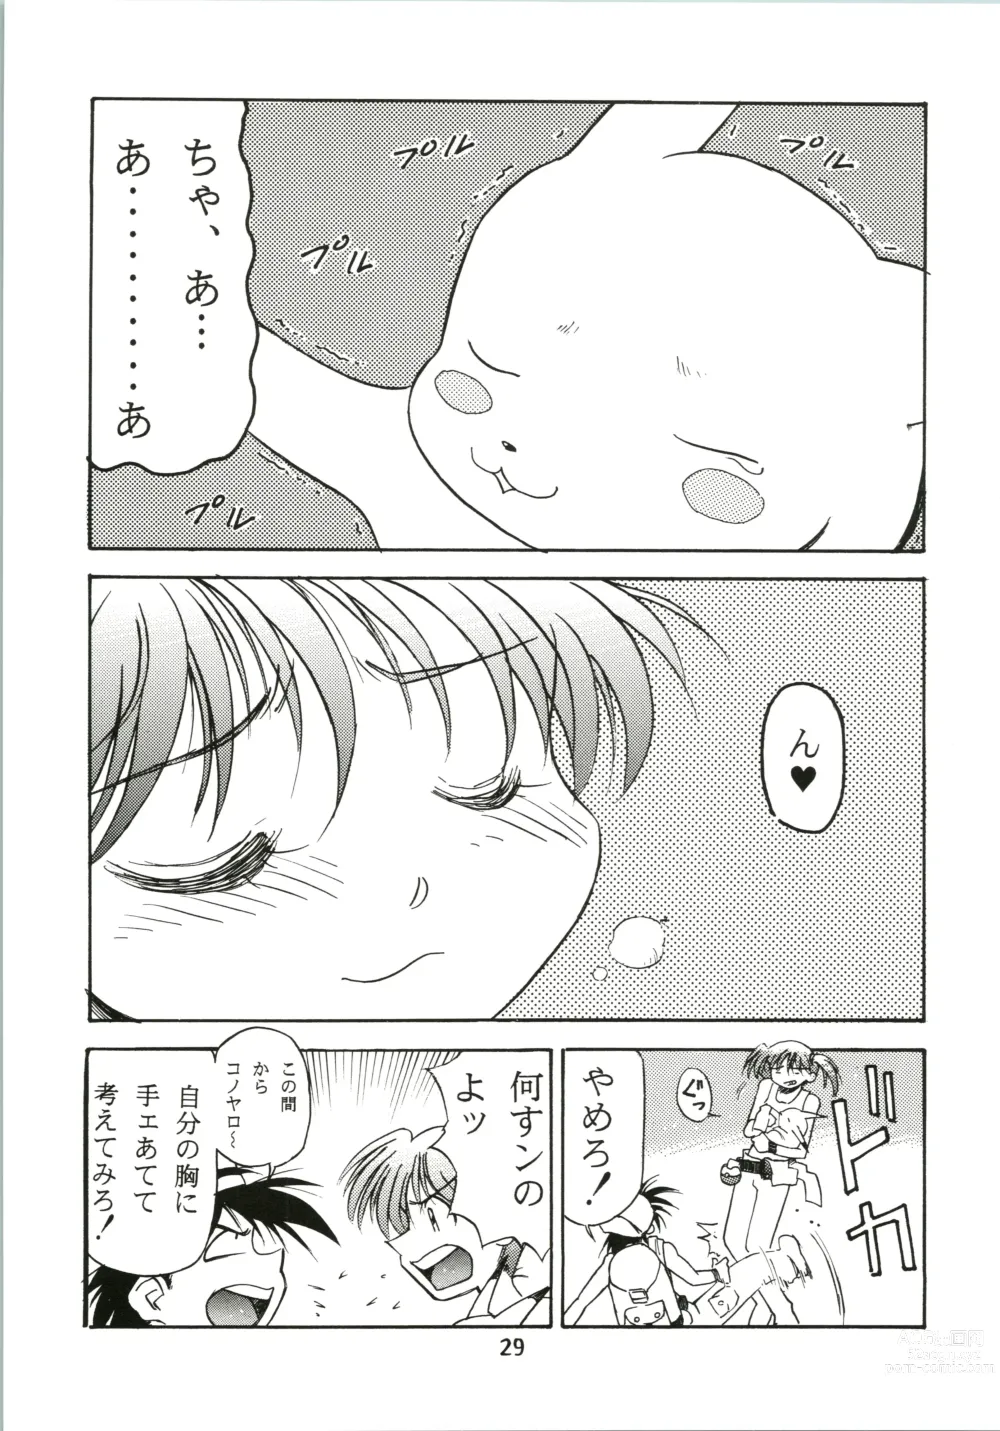 Page 29 of doujinshi Sakura Ame